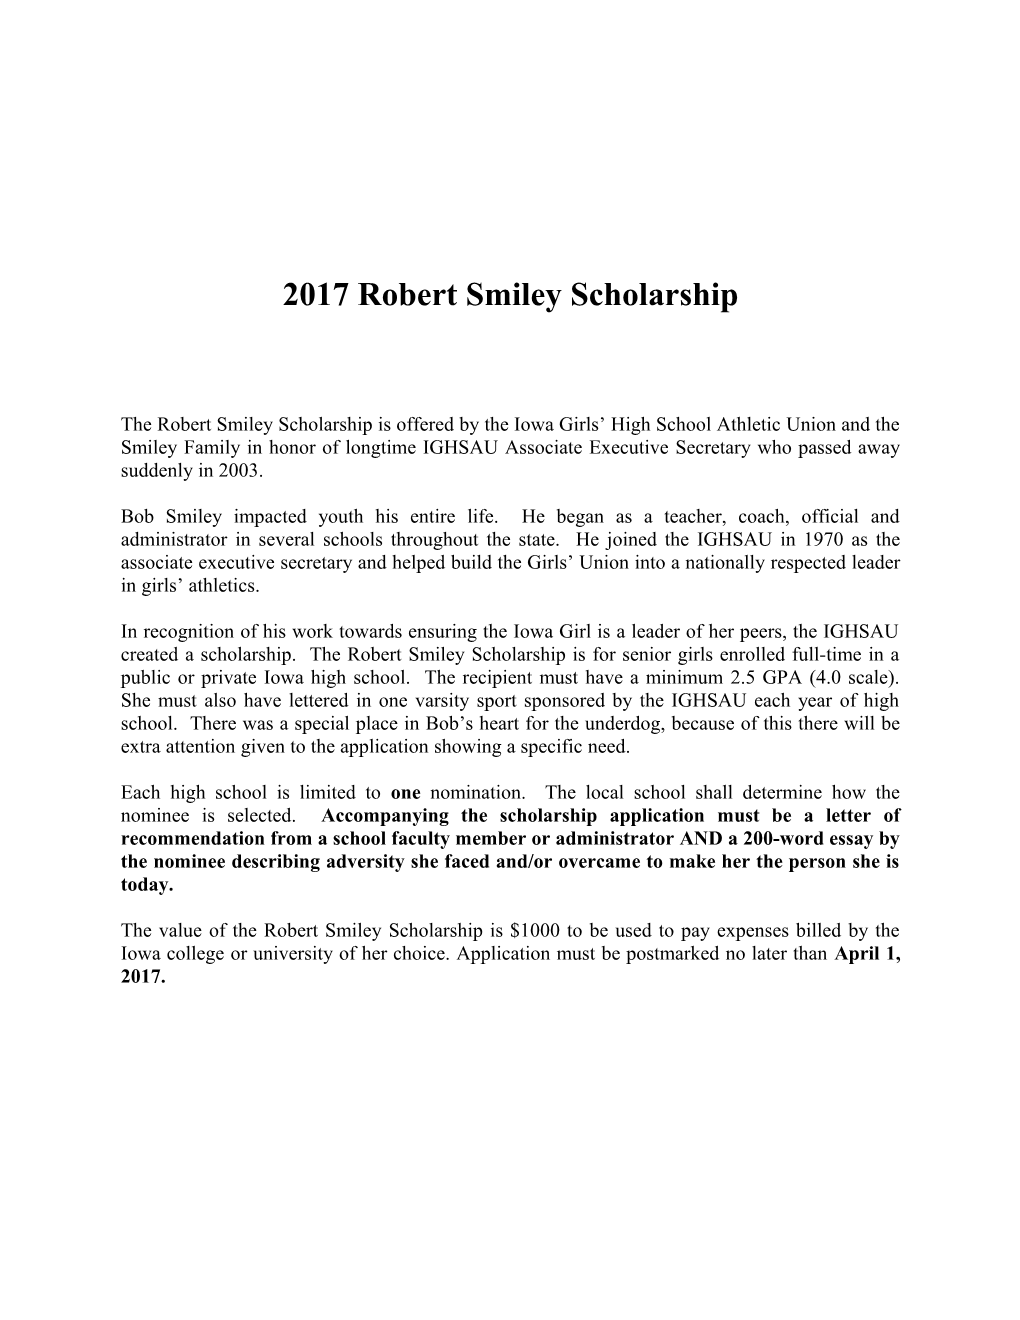 2008 Robert Smiley Scholarship